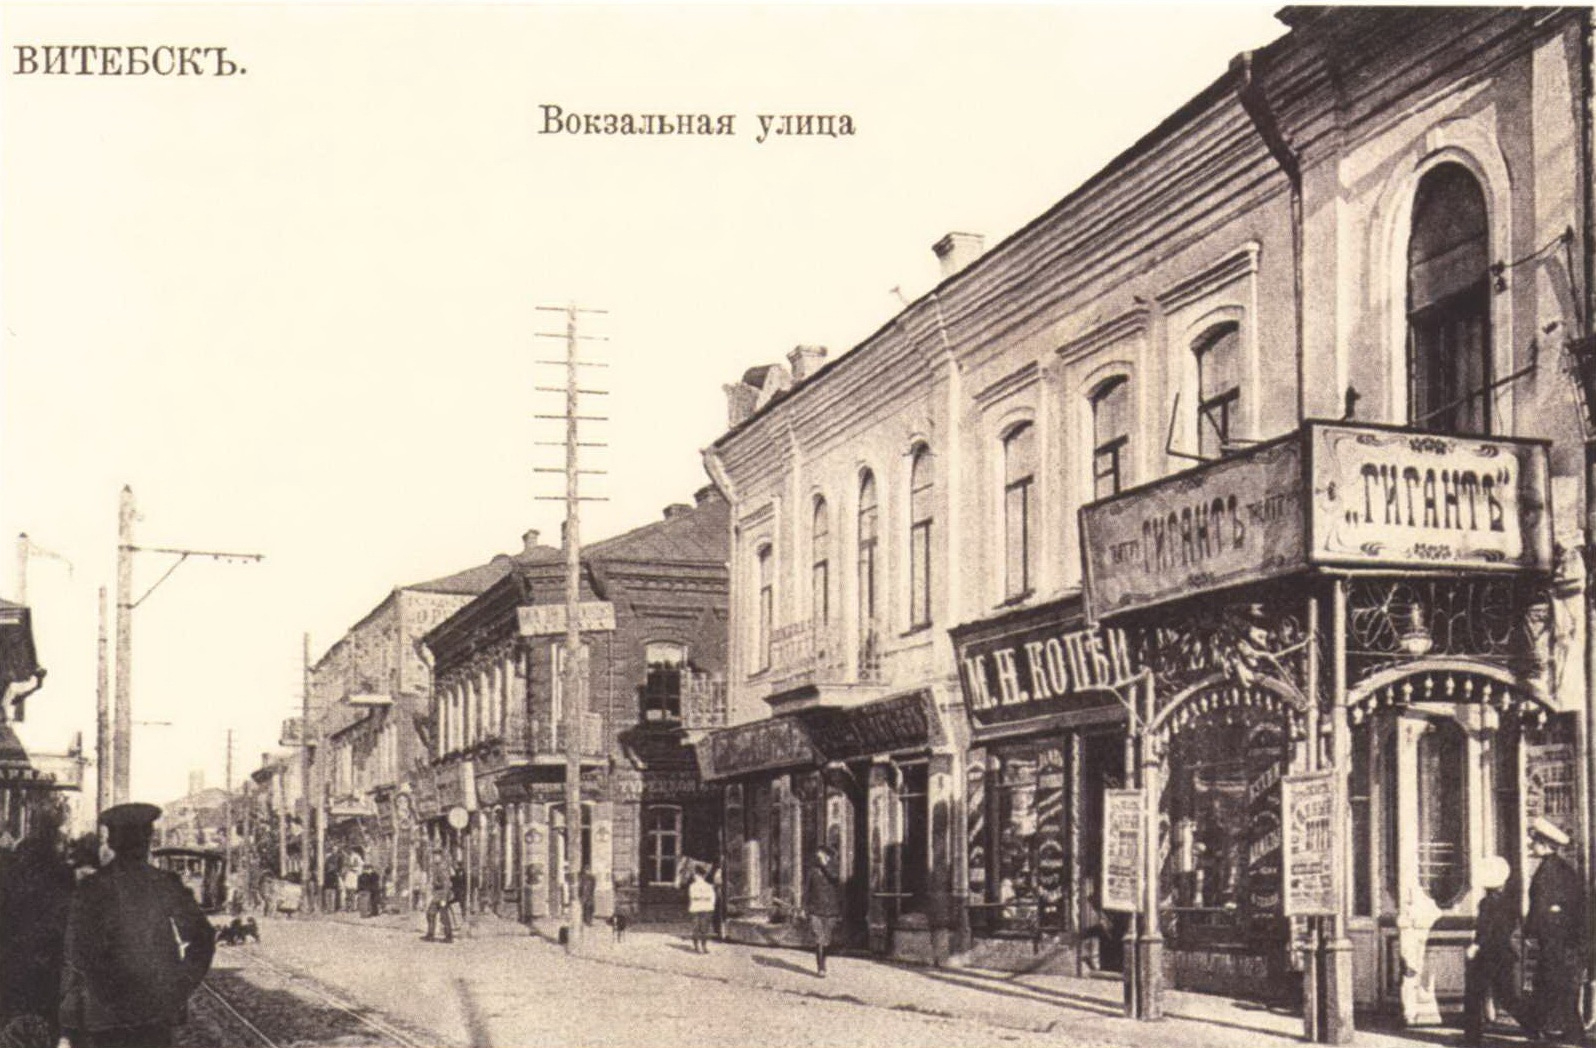 Кинотеатр «Гигант» на Вокзальной улице. Открытка начала начала XX века.